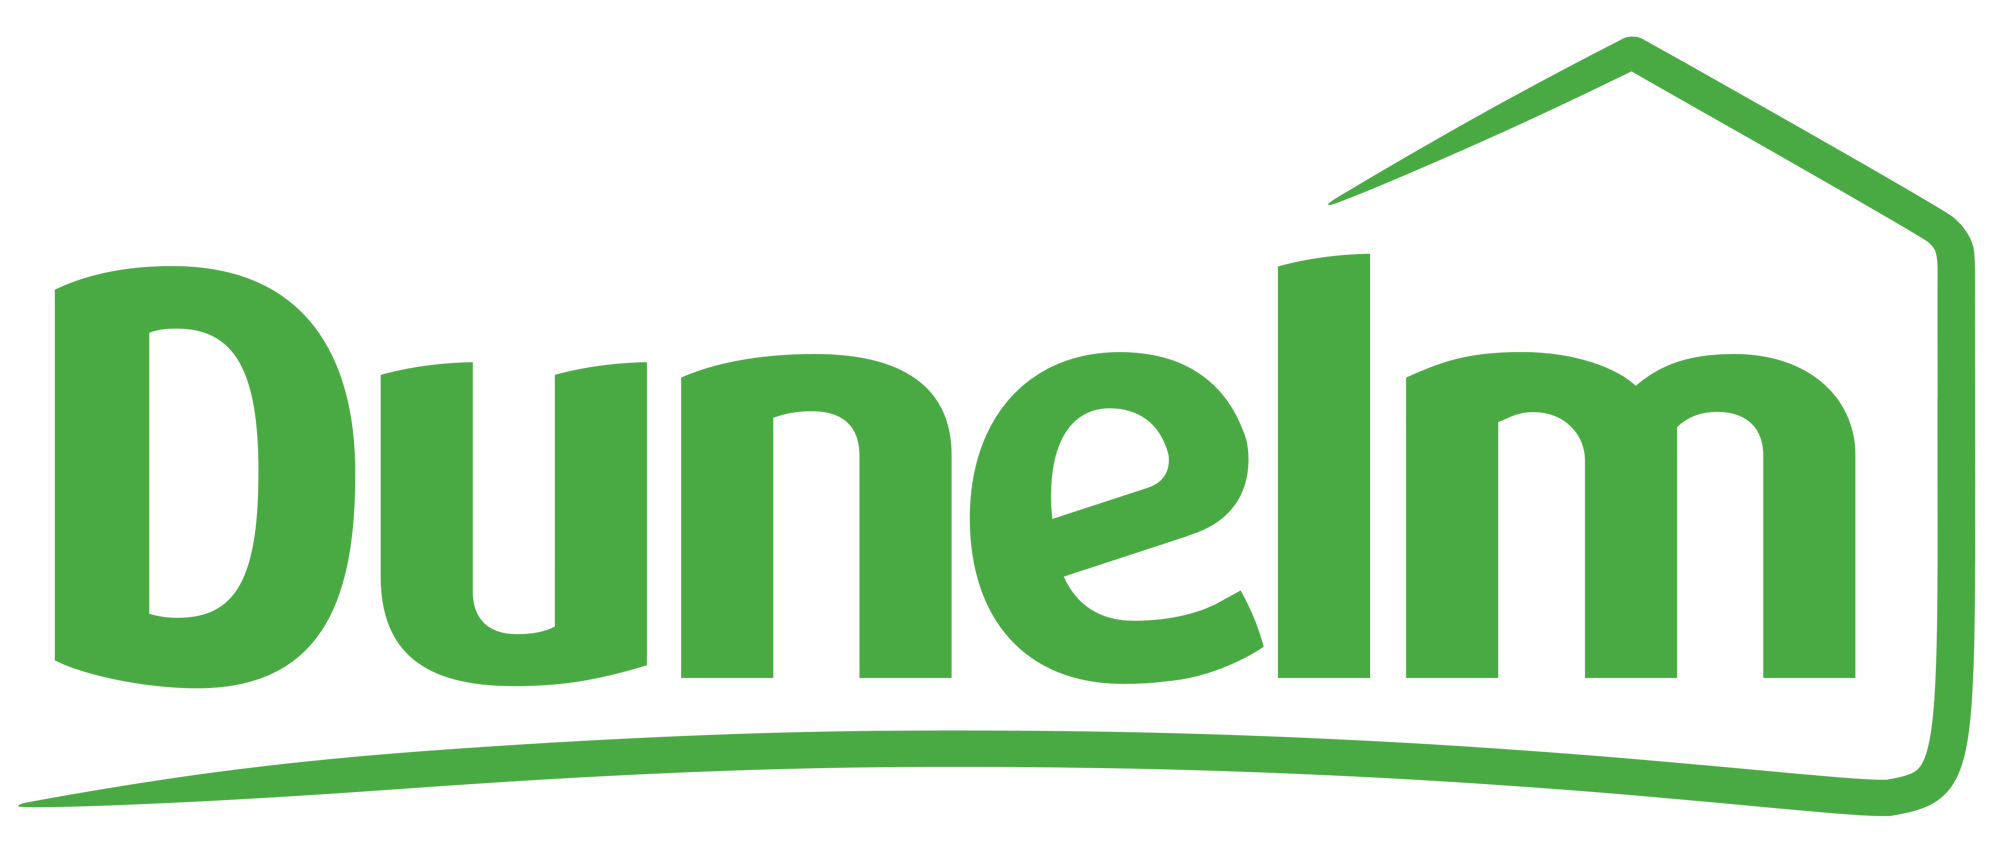 Dunelm_logo